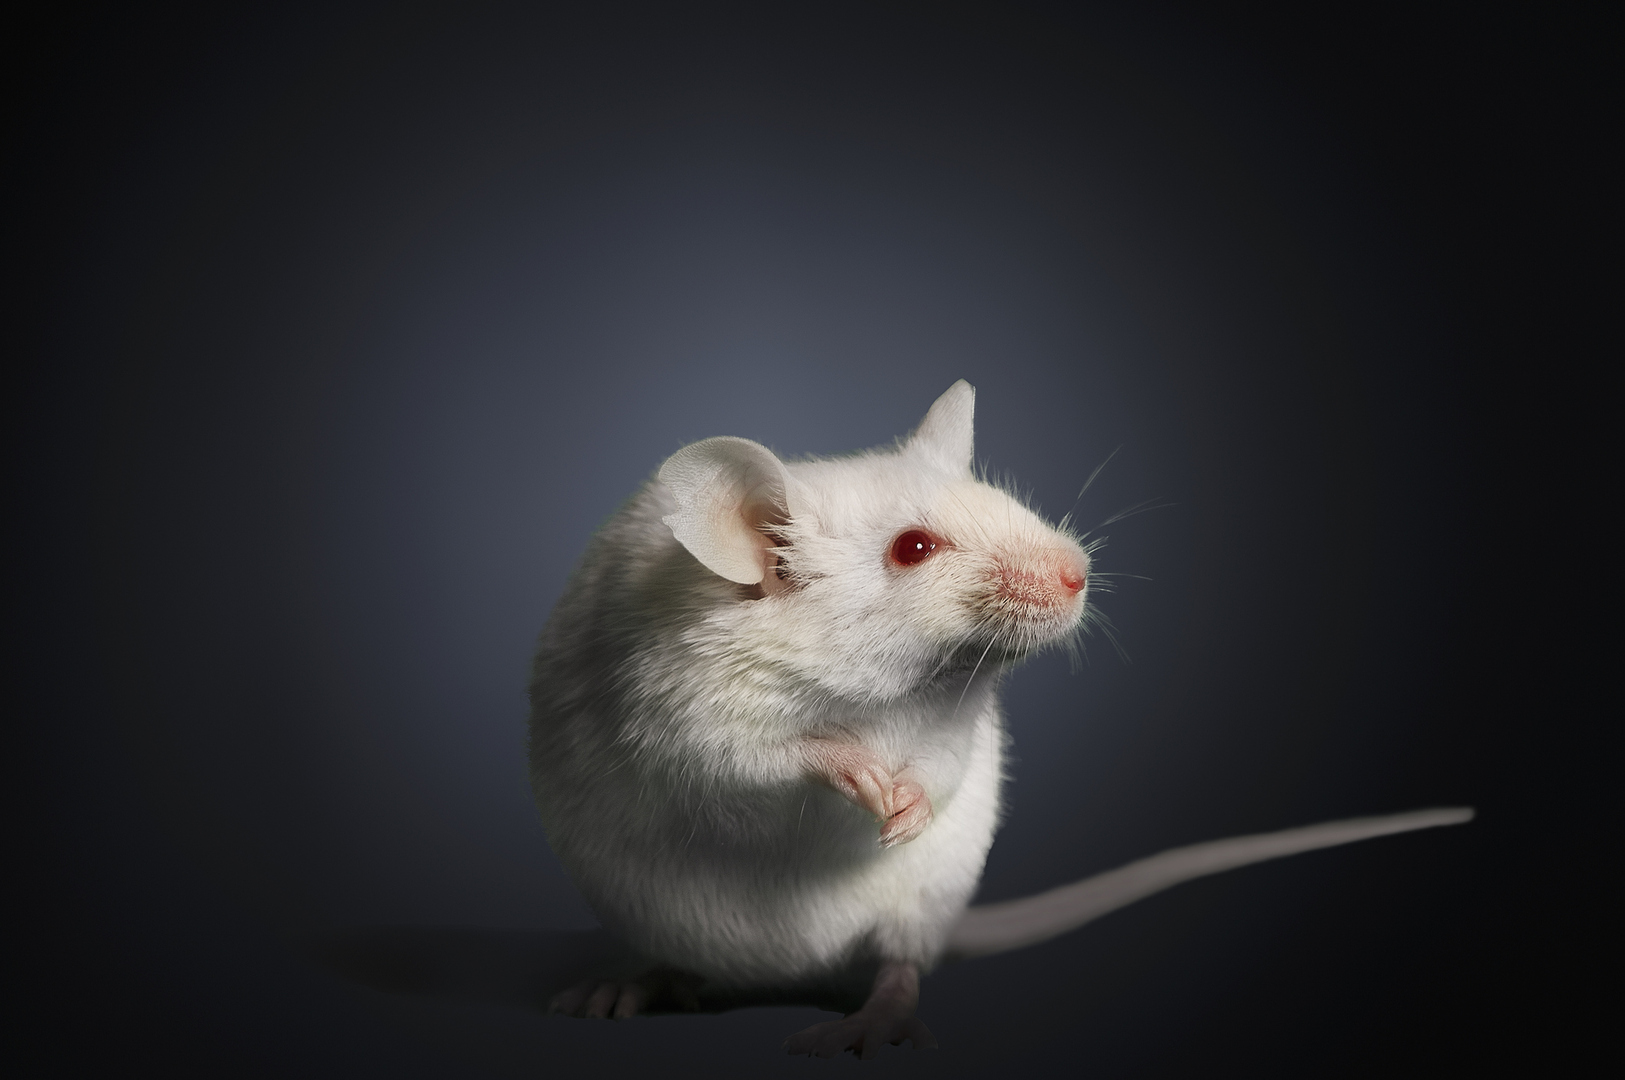 تقنية جديدة لتعديل الجينات تعكس فقدان البصر لدى الفئران وتعد بنتائج مماثلة في البشر